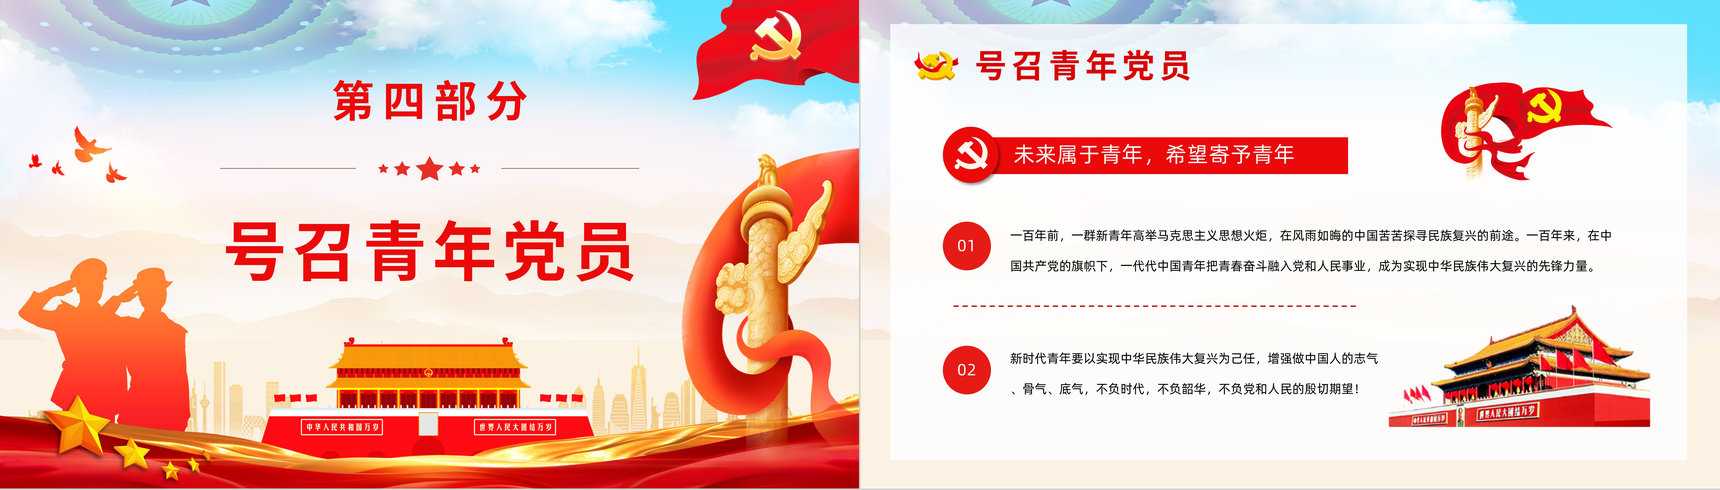 中国共产党百年辉煌宣传建党一百周年大会讲话精神解读学习动员大会PPT模板-9